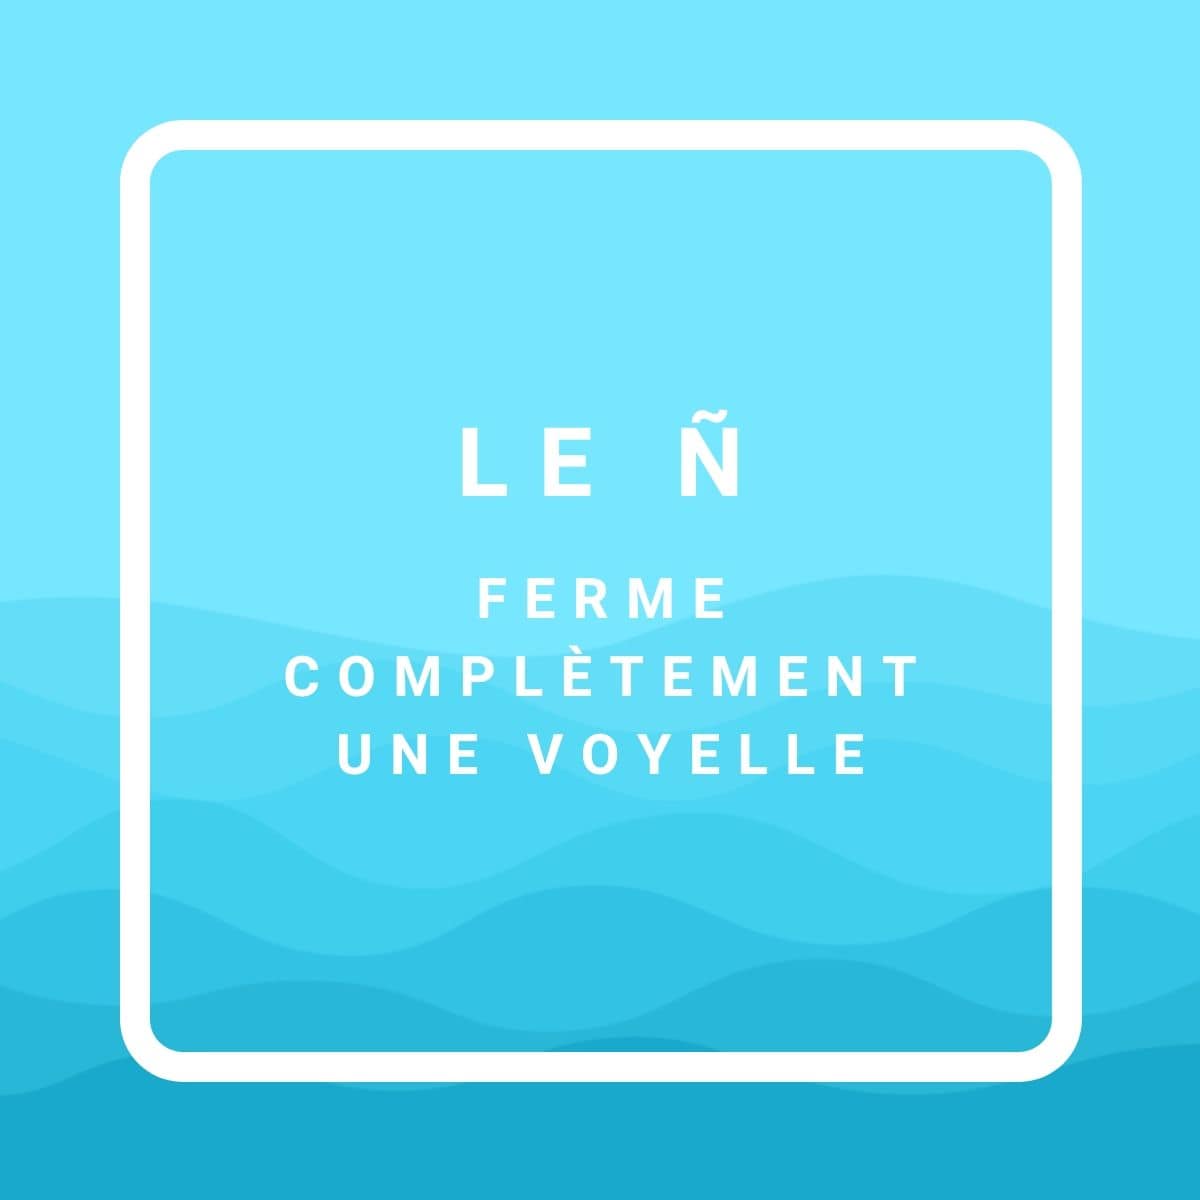 Le ñ ferme une voyelle, quand on prononce les lettres en breton.